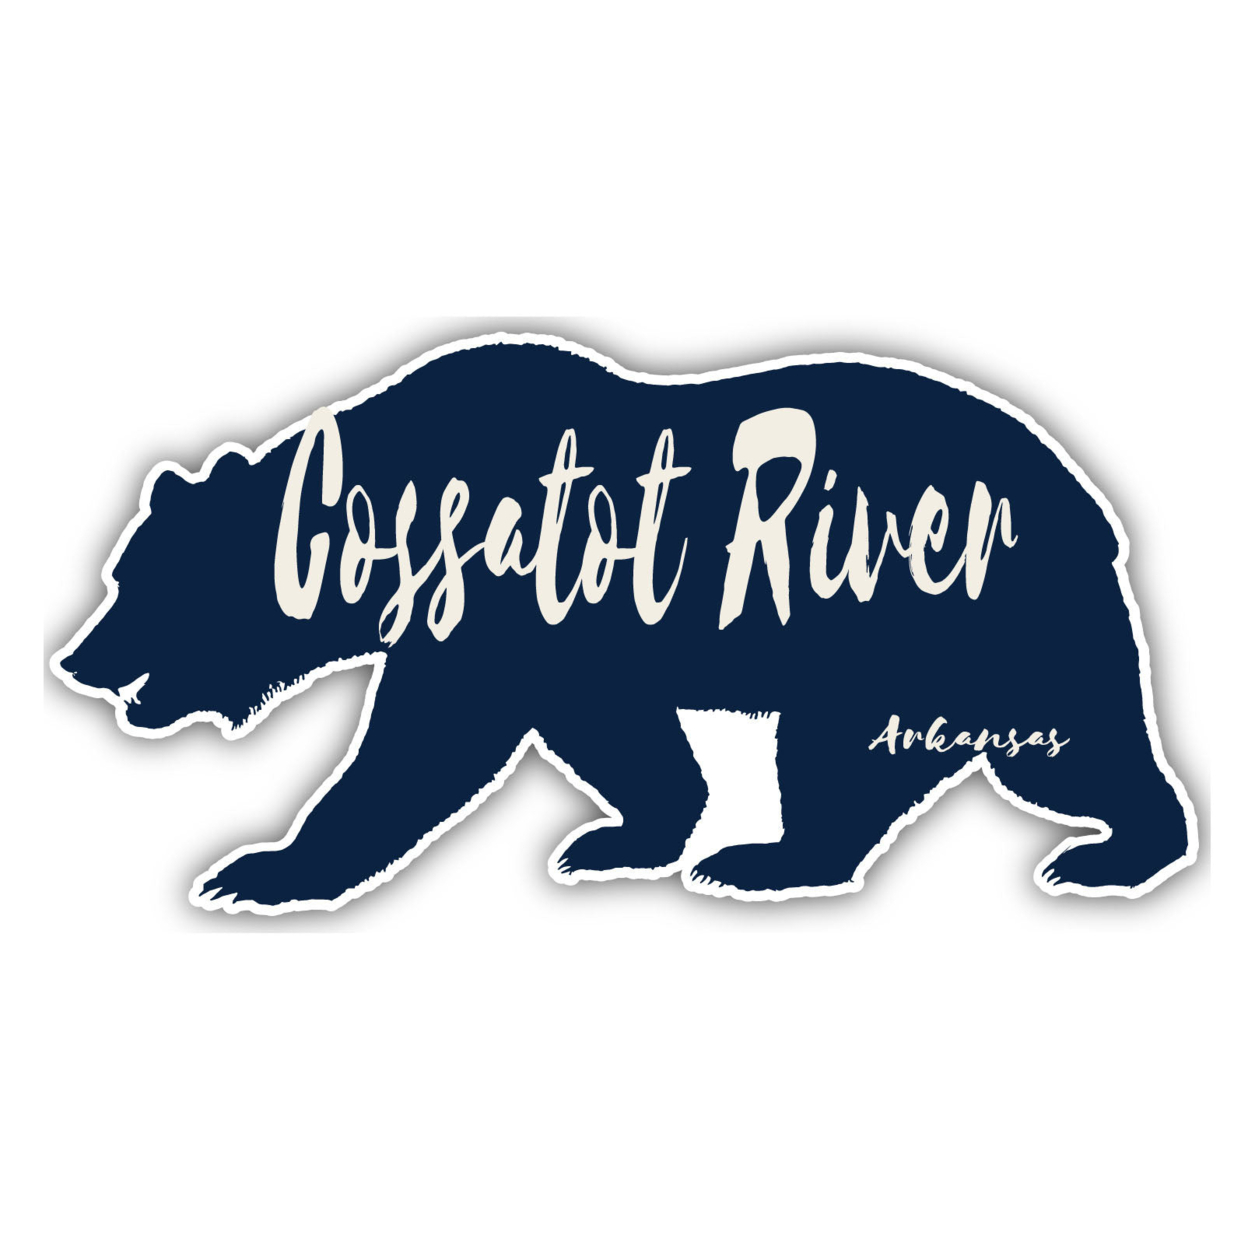 Cossatot River Arkansas Souvenir Decorative Stickers (Choose Theme And Size) - Single Unit, 10-Inch, Bear